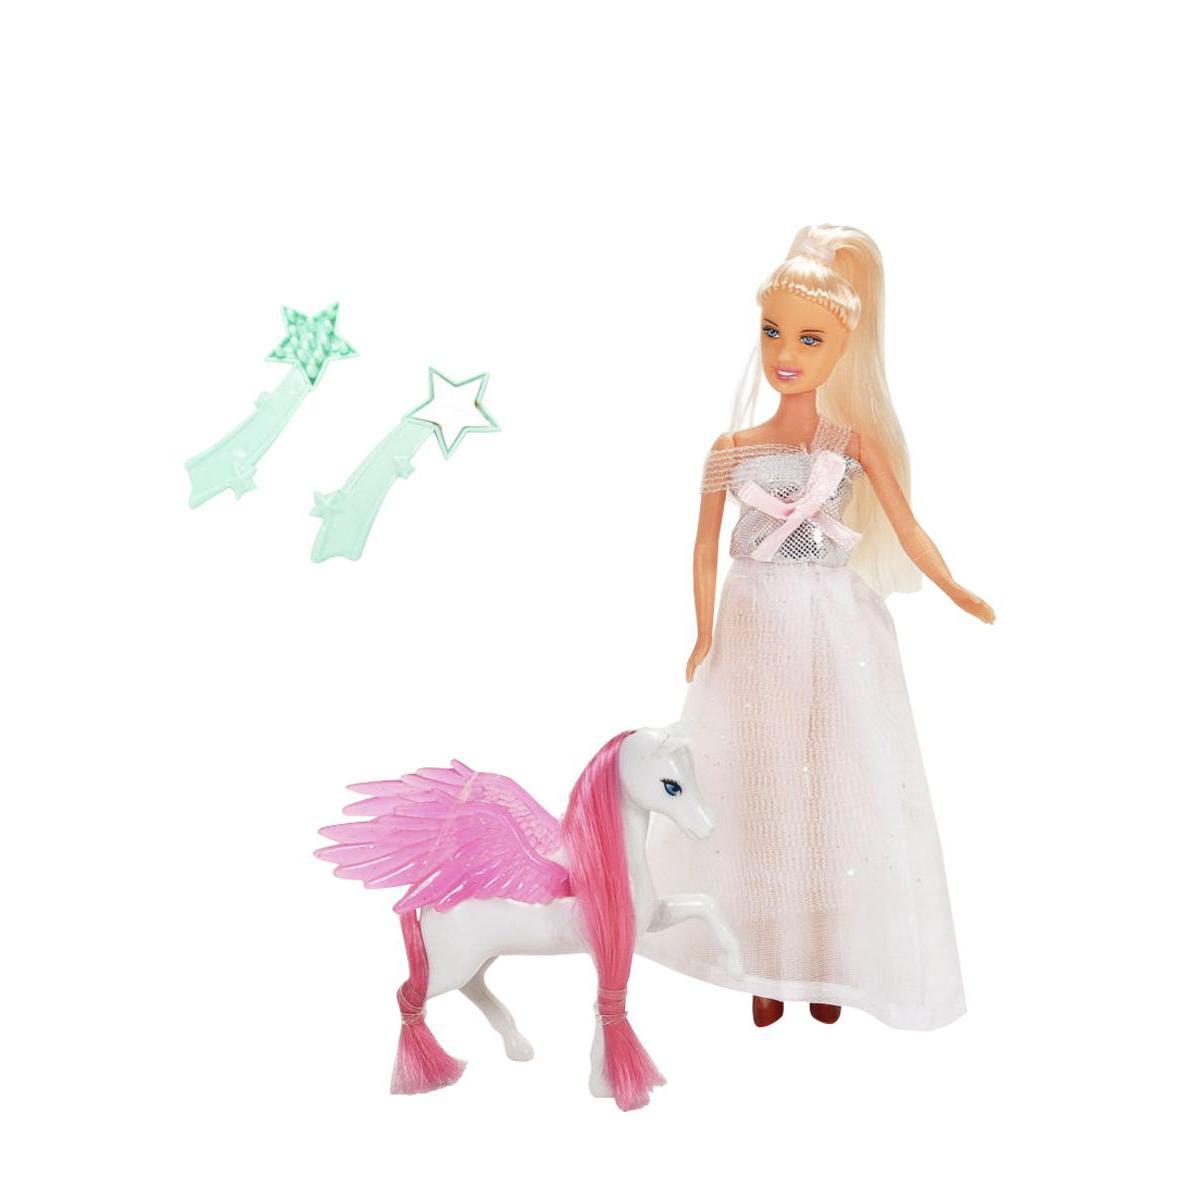 Princesse + cheval + accessoires en PVC et polyester - 24 x 17 x 4 cm - Rose, Blanc